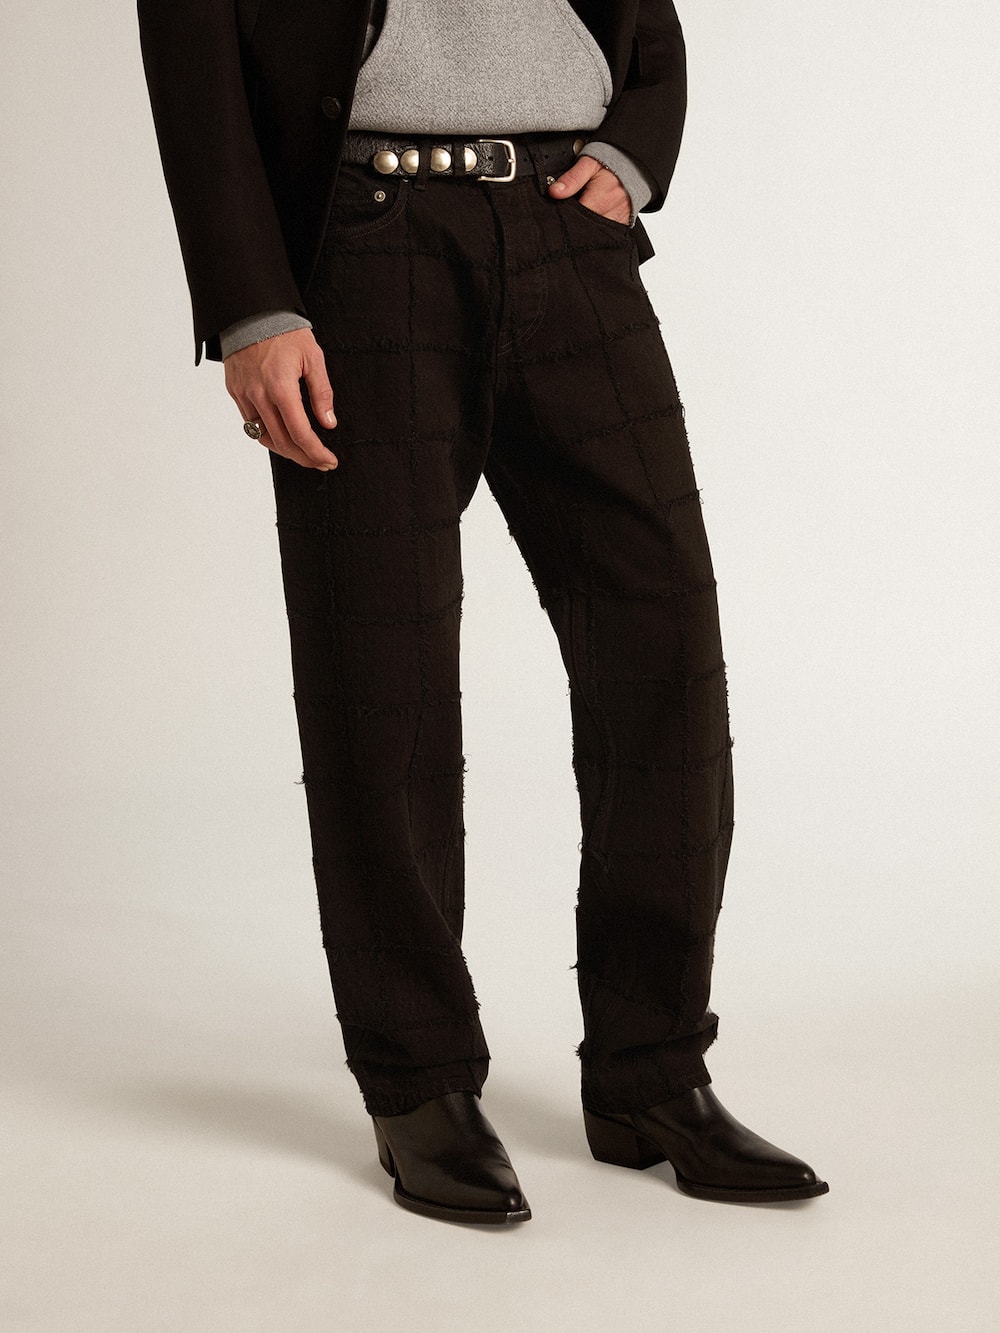 Golden Goose - Pantalón en algodón de color negro con motivo de cuadros efecto 3D in 